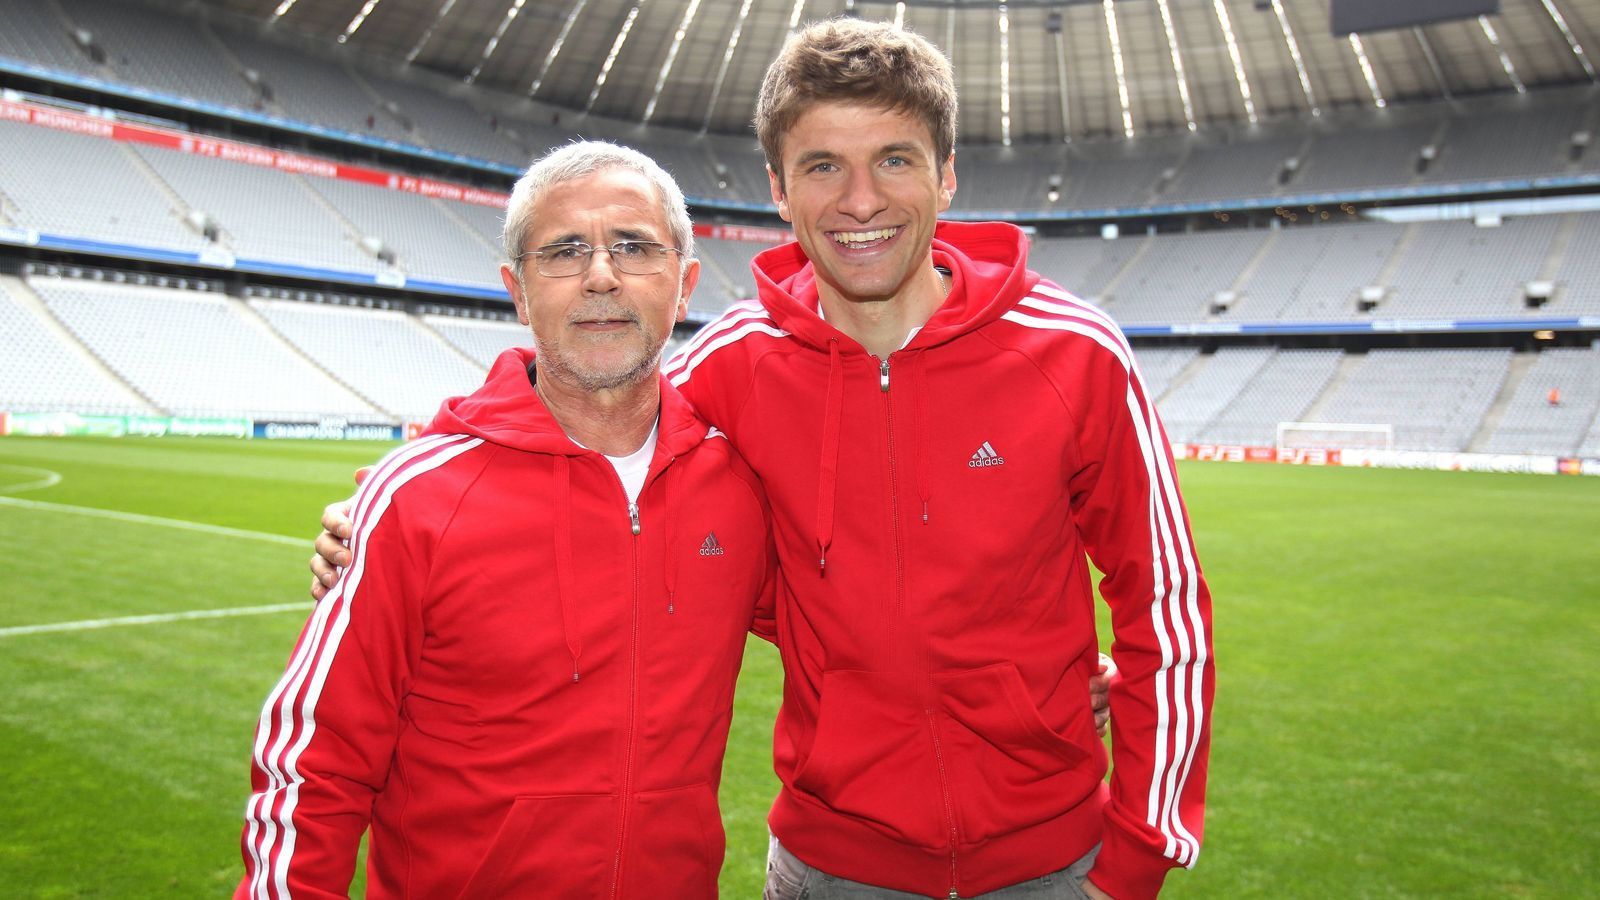 
                <strong>Thomas Müller (Bayern-Profi)</strong><br>
                "Man kann ihn in Deutschland und speziell beim FC Bayern nicht hoch genug heben. Ohne Gerd Müller, ohne seine Konstanz, seine Tore und seine Schlitzohrigkeit würde es den FC Bayern in dieser Form heute nicht geben."
              